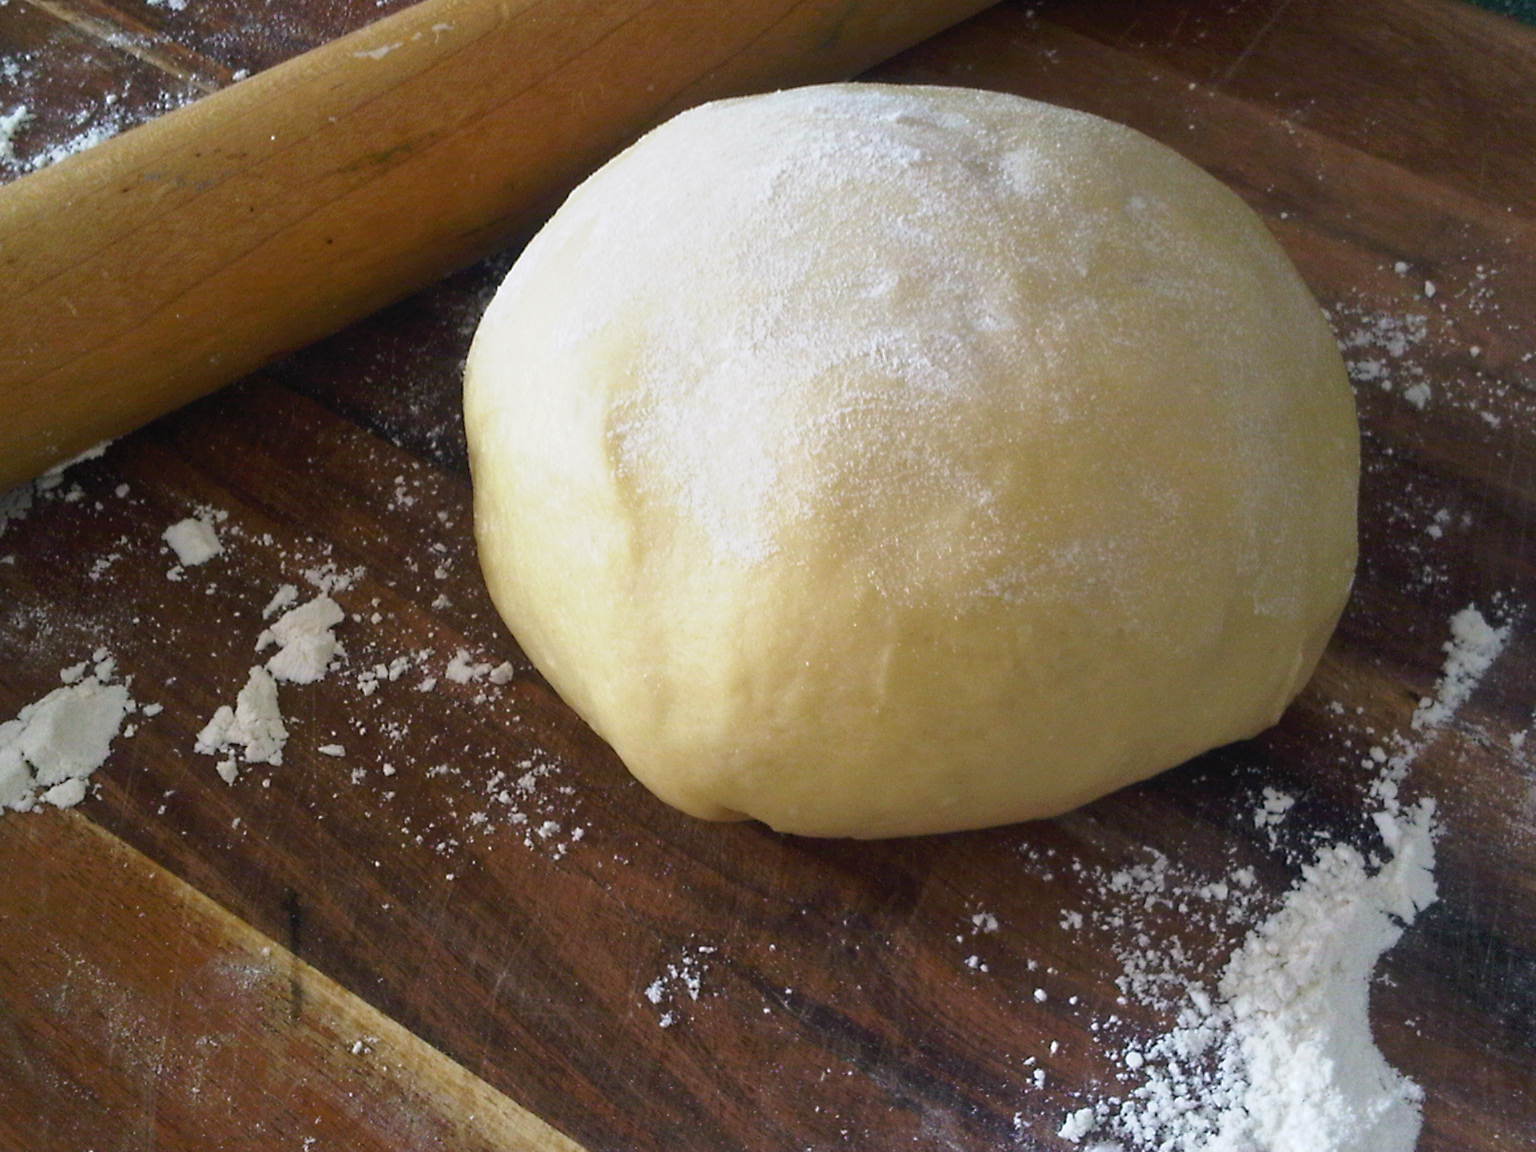 ravioli dough